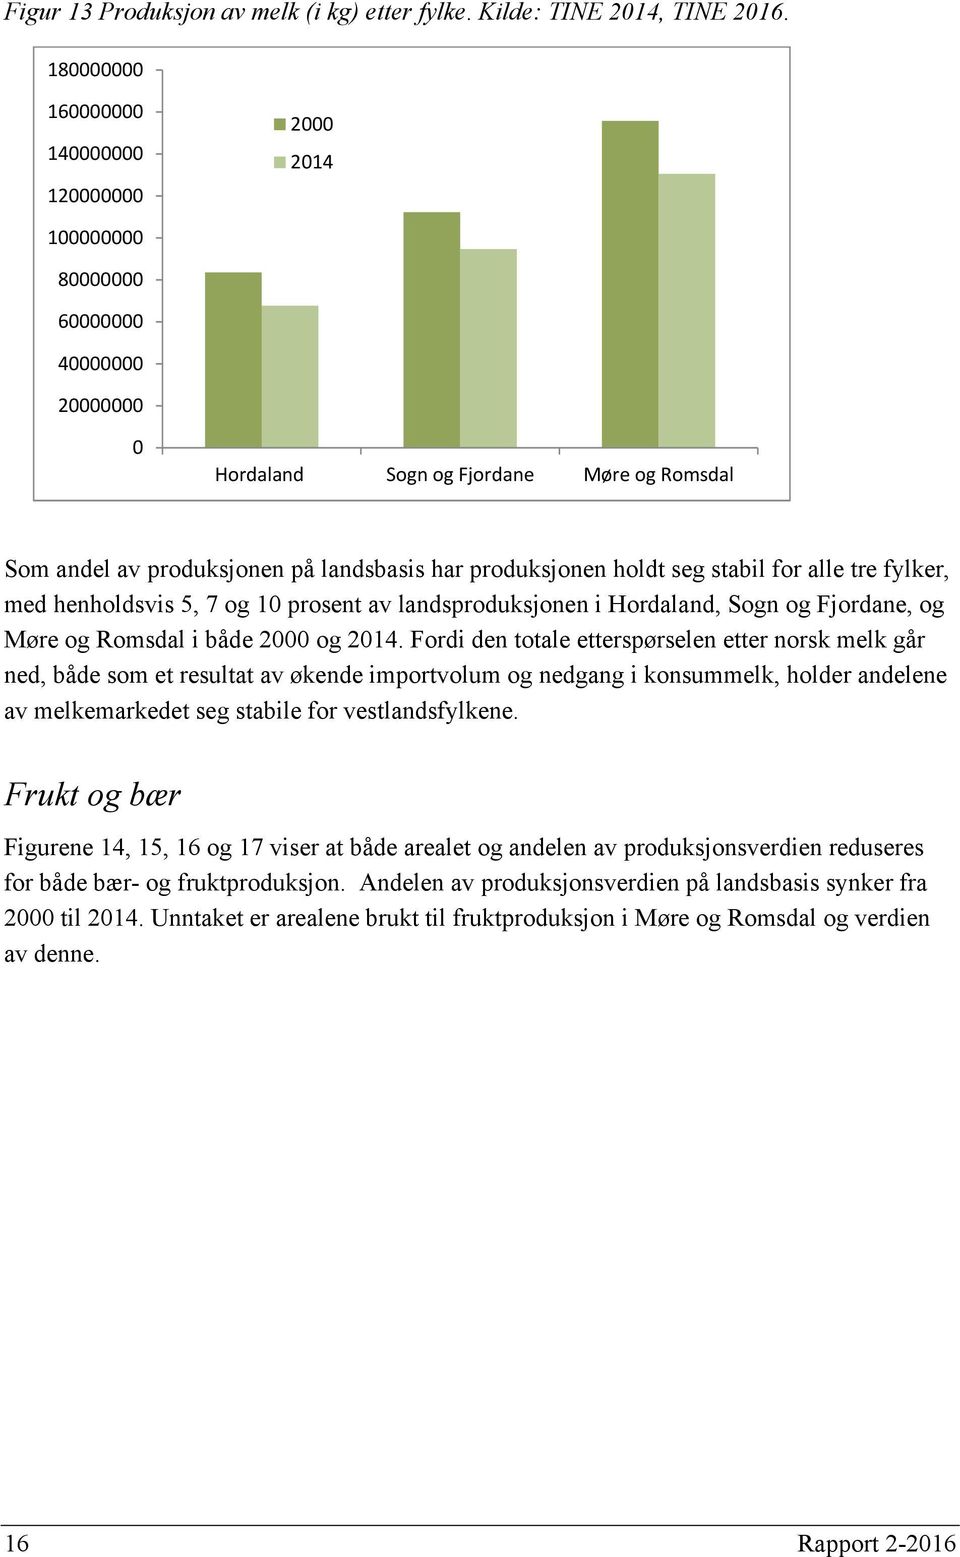 holdt seg stabil for alle tre fylker, med henholdsvis 5, 7 og 10 prosent av landsproduksjonen i Hordaland, Sogn og Fjordane, og Møre og Romsdal i både 2000 og 2014.